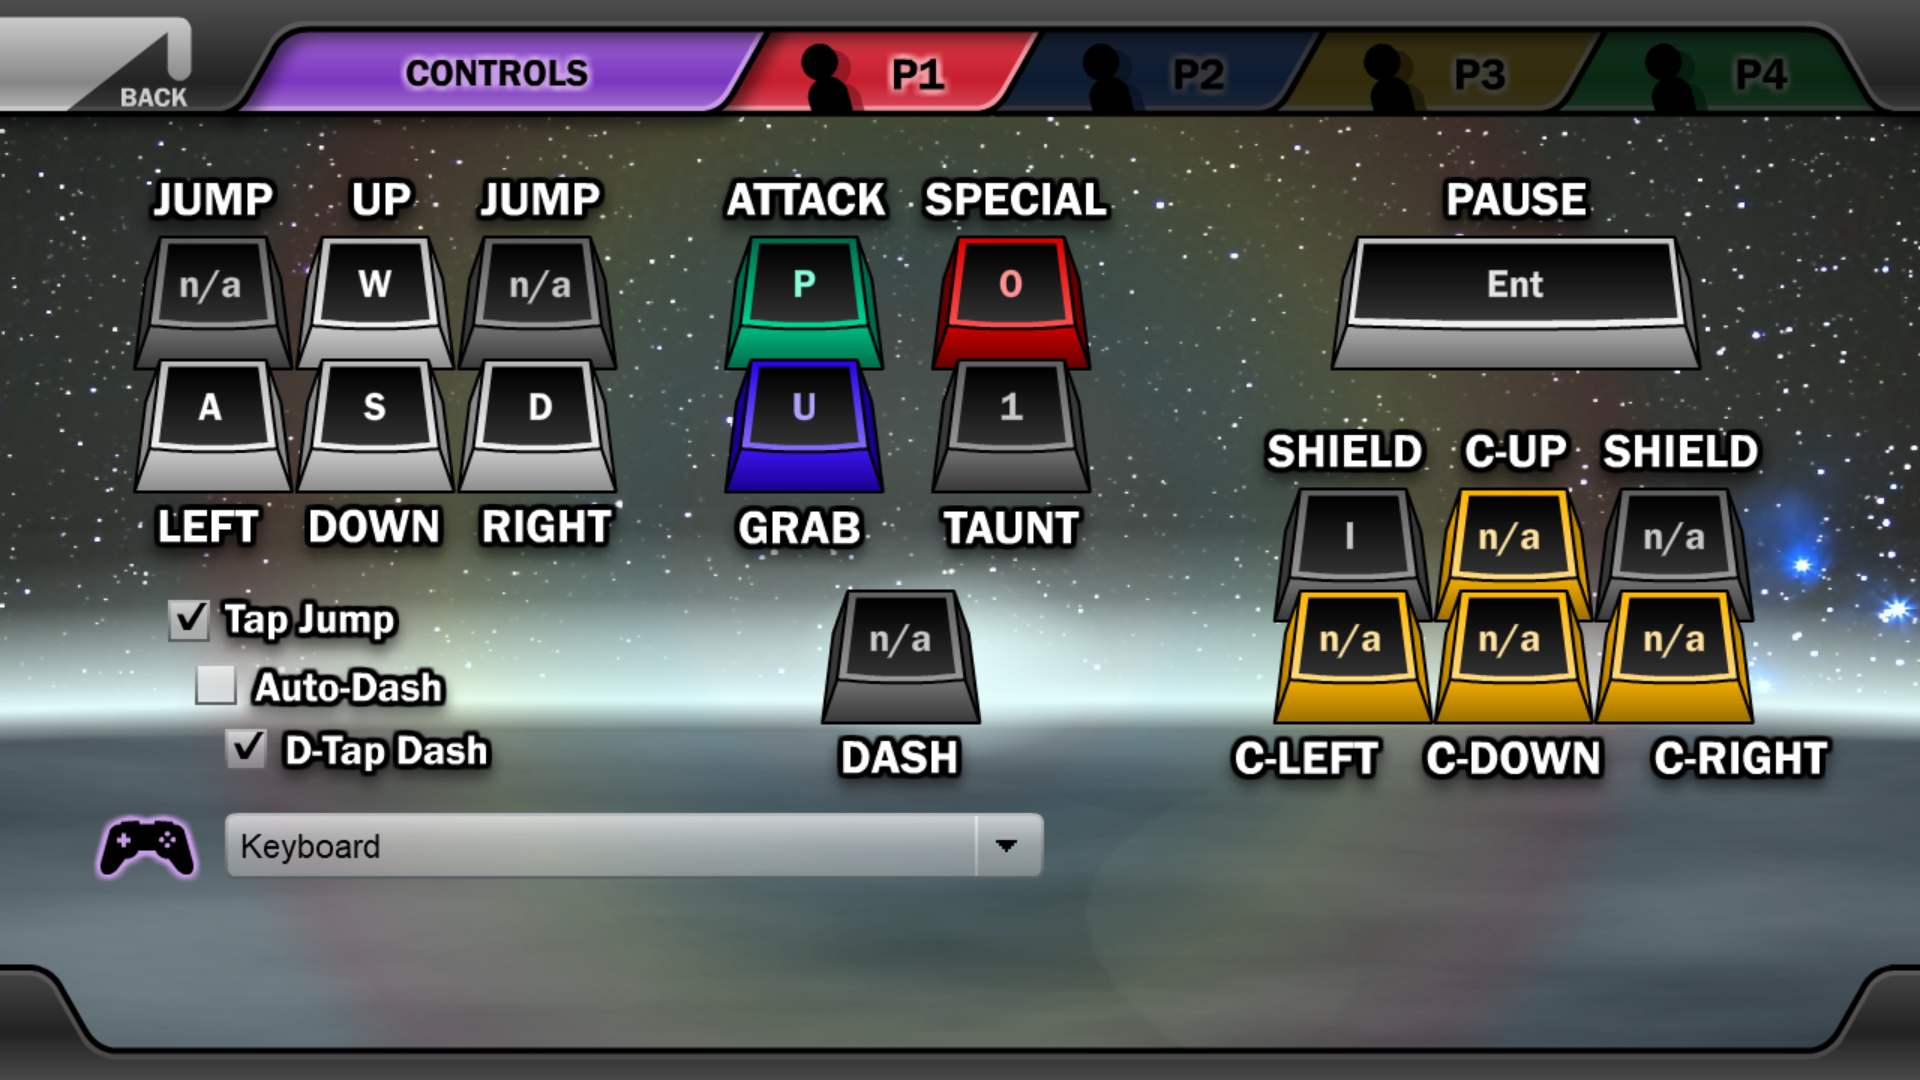 super smash flash 2 controls